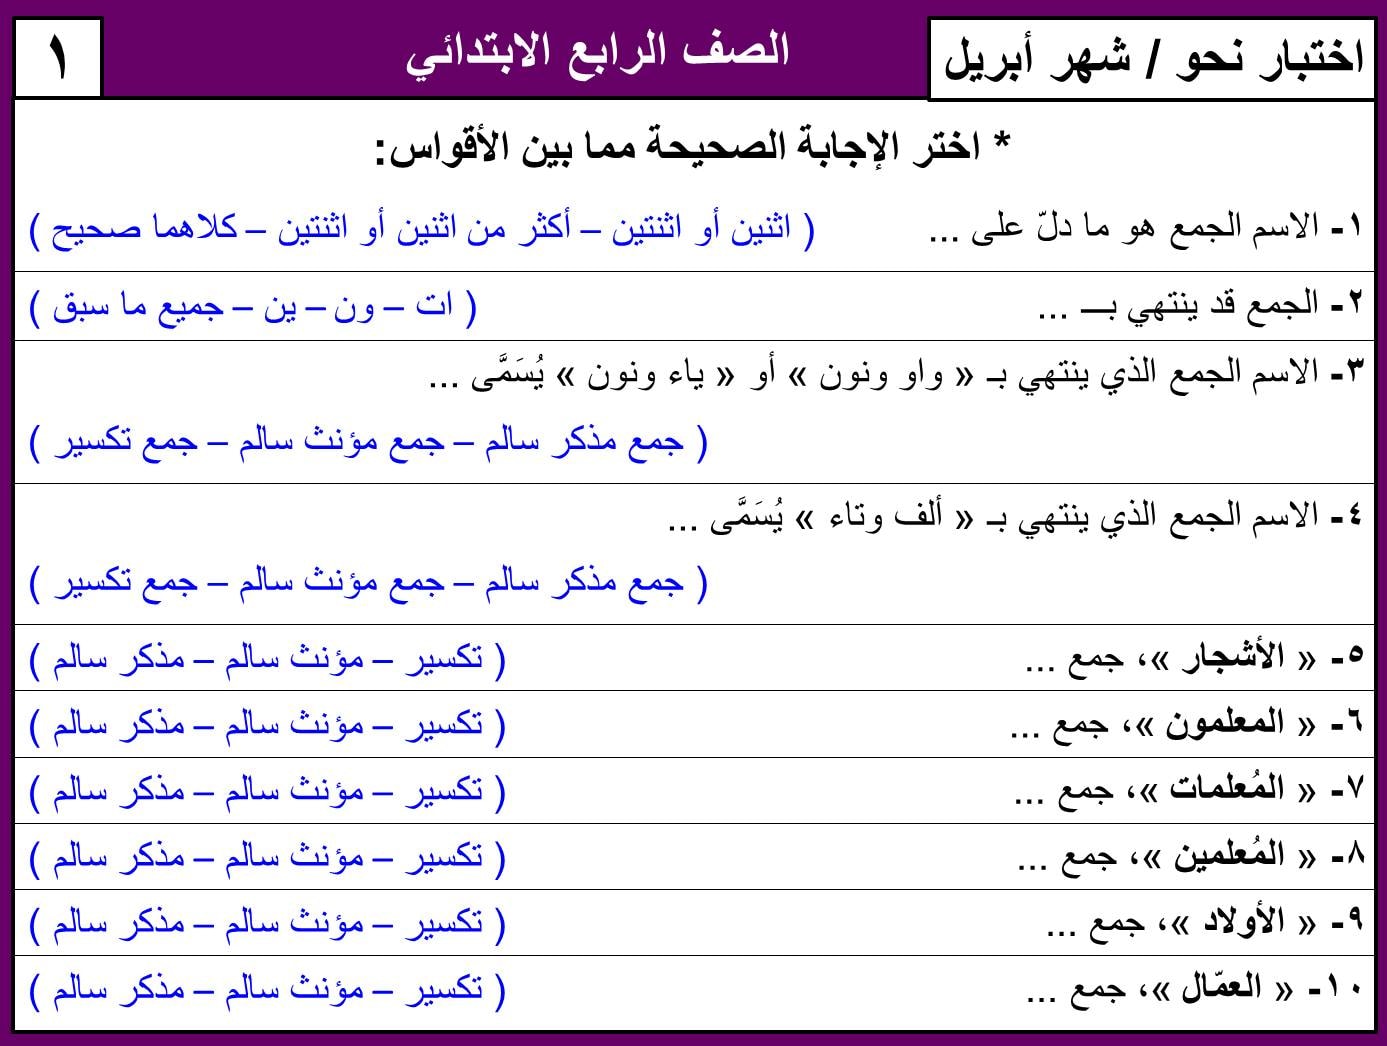 نماذج امتحان لغة عربية منهج ابريل الصف الرابع الابتدائي ترم ثاني بالاجابات 7